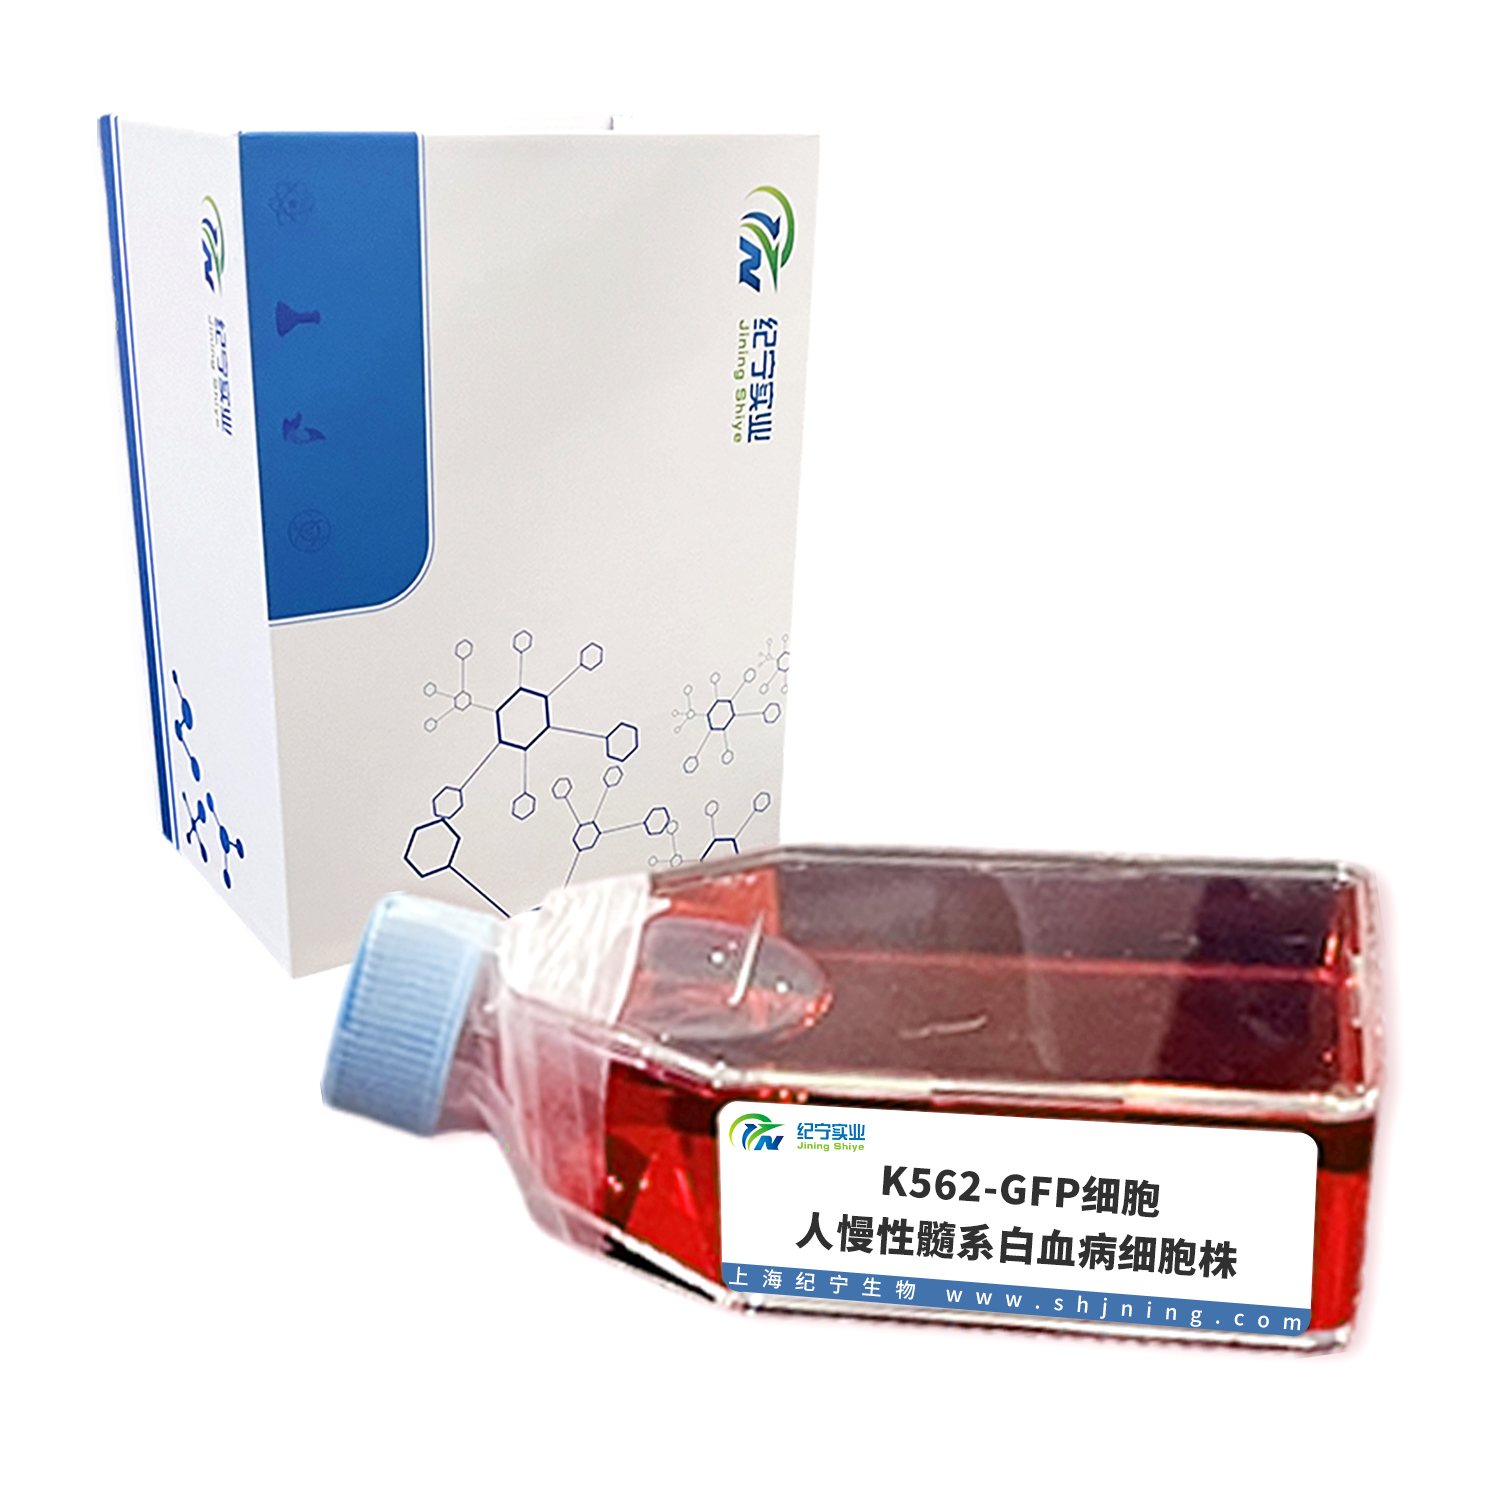 K562-GFP细胞＿人慢性髓系白血病细胞株